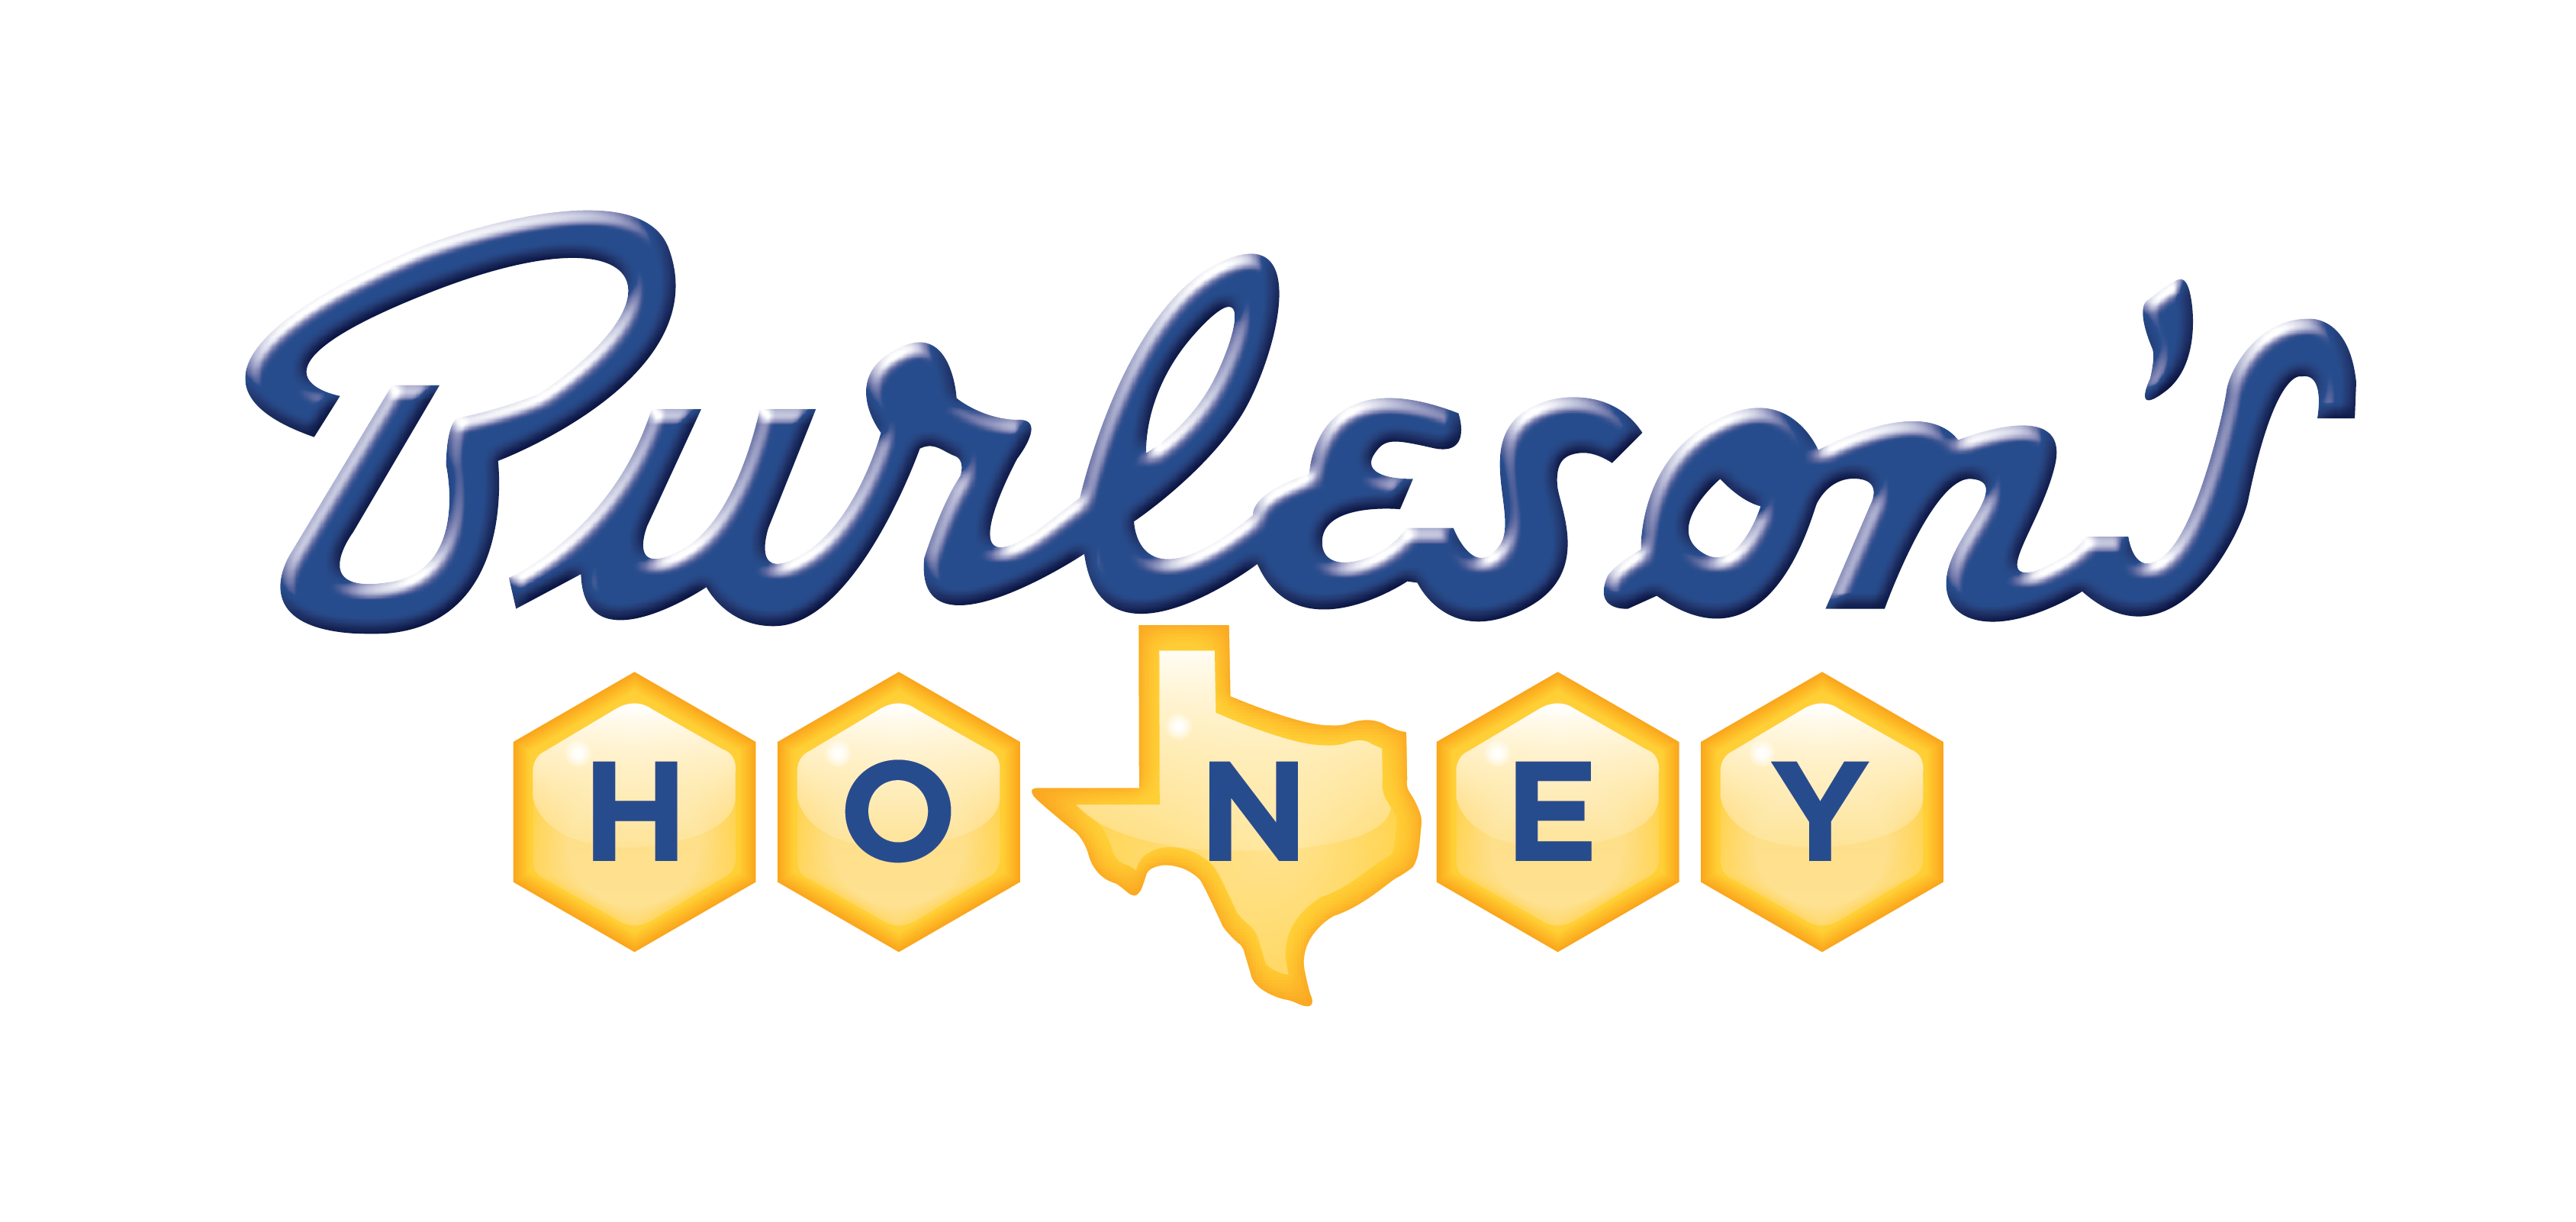 Burleson's Honey Company logo